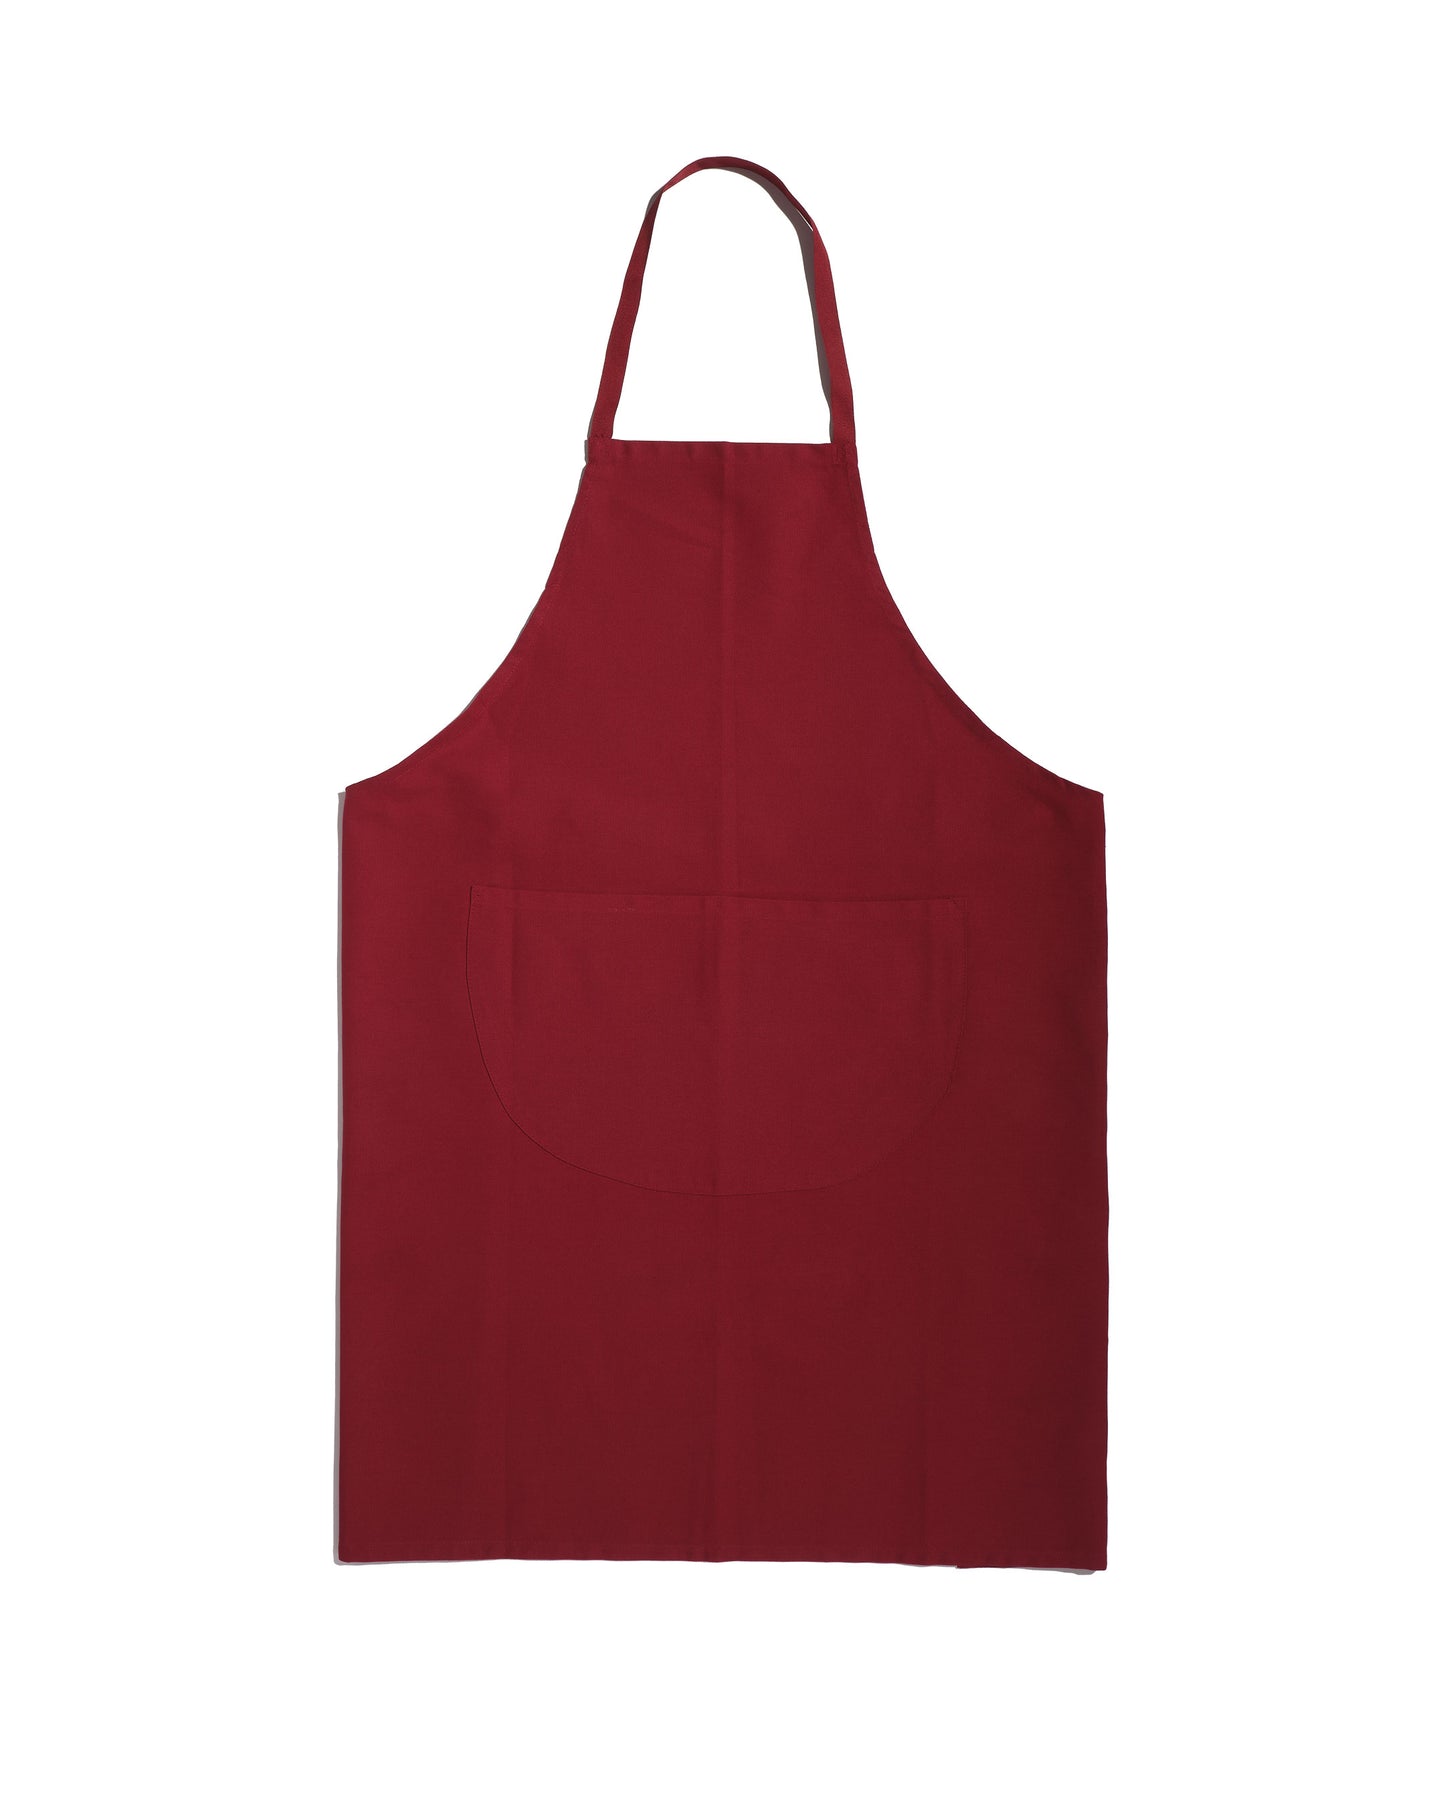 Long bib apron 100% cotton